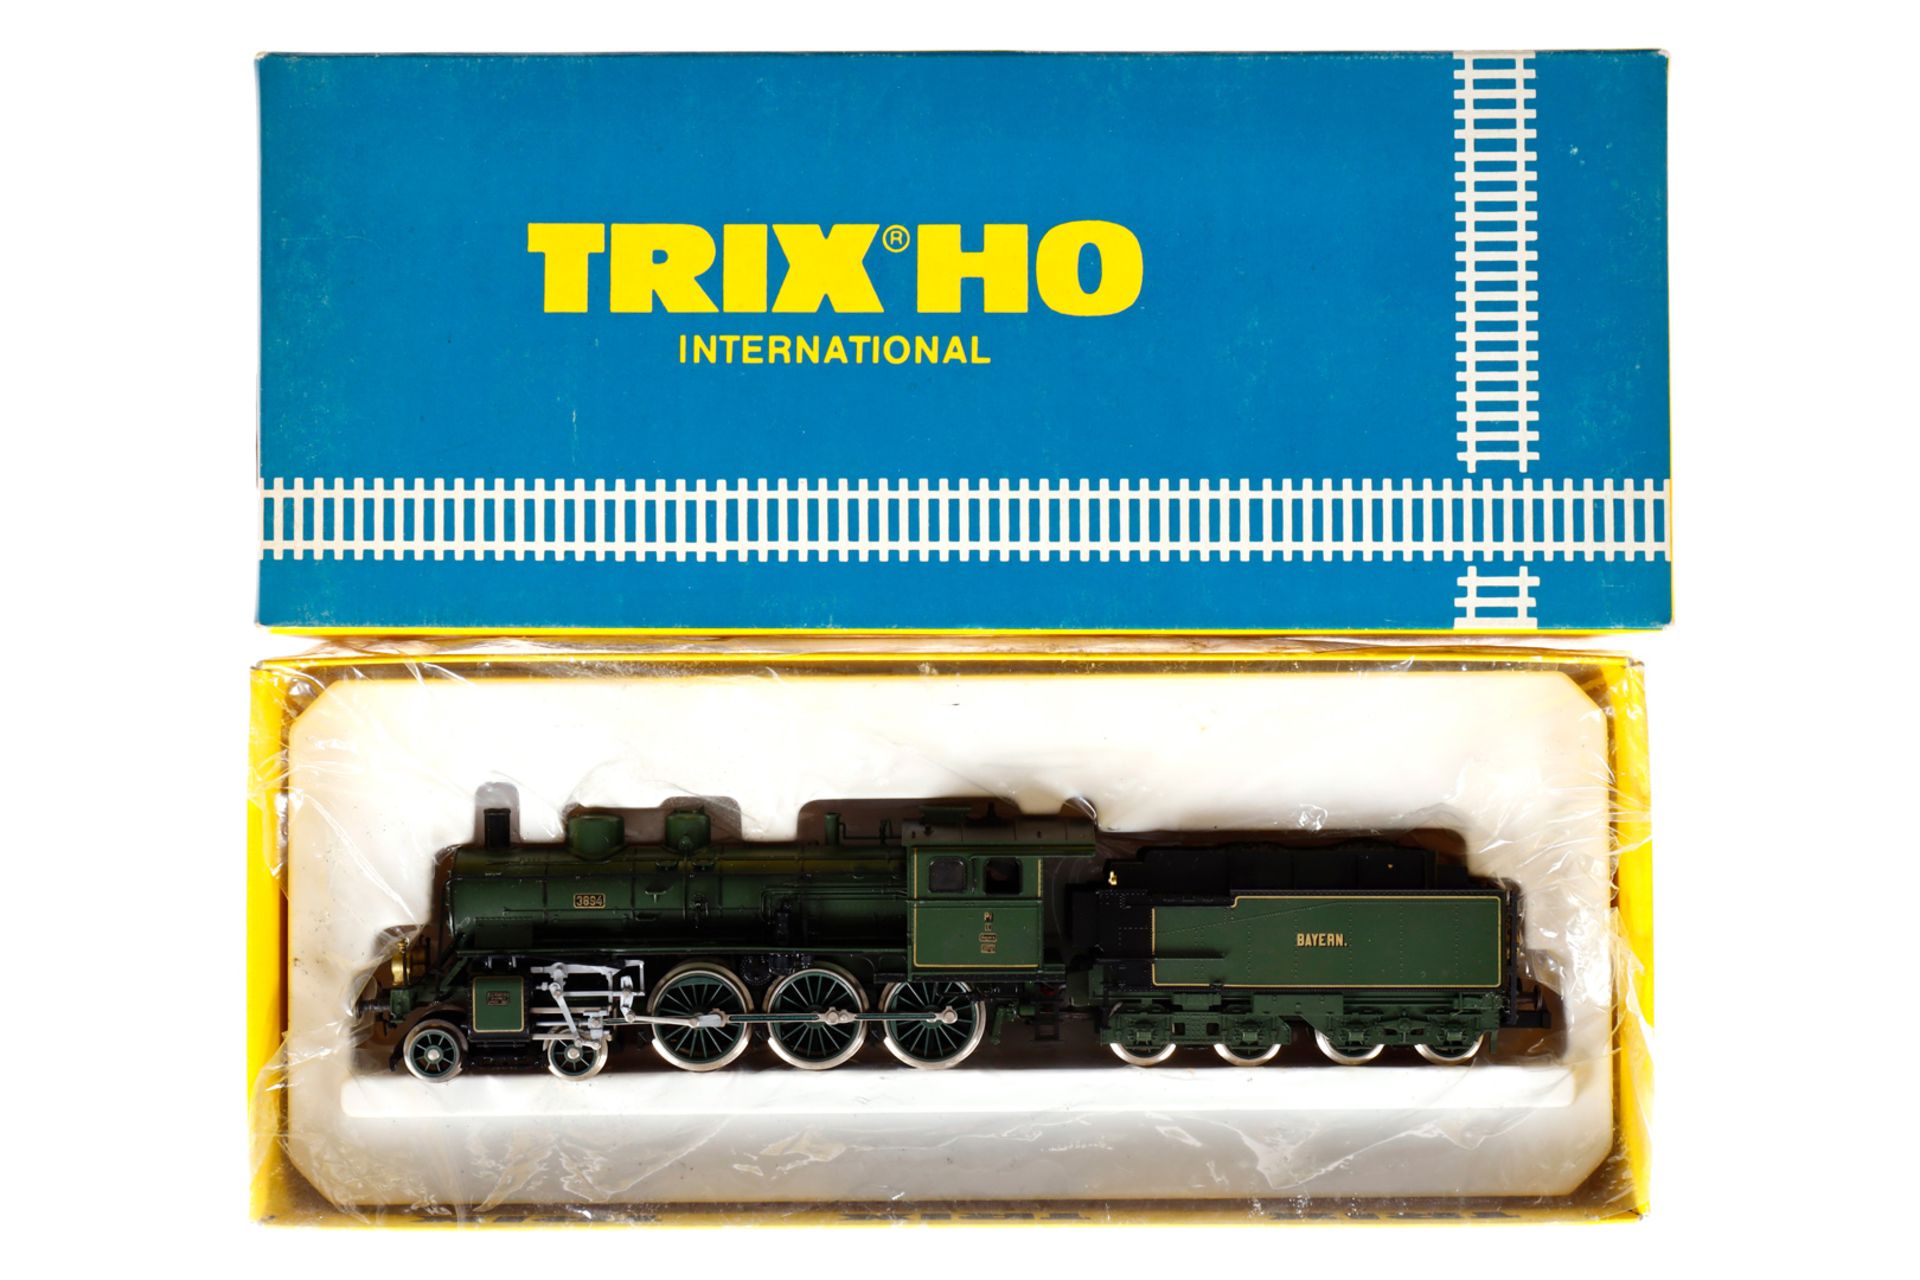 Trix 2-C Schlepptenderlok ”3894” 2408, Spur H0, 2-Leiter, grün/schwarz, Alterungsspuren, OK, Z 2